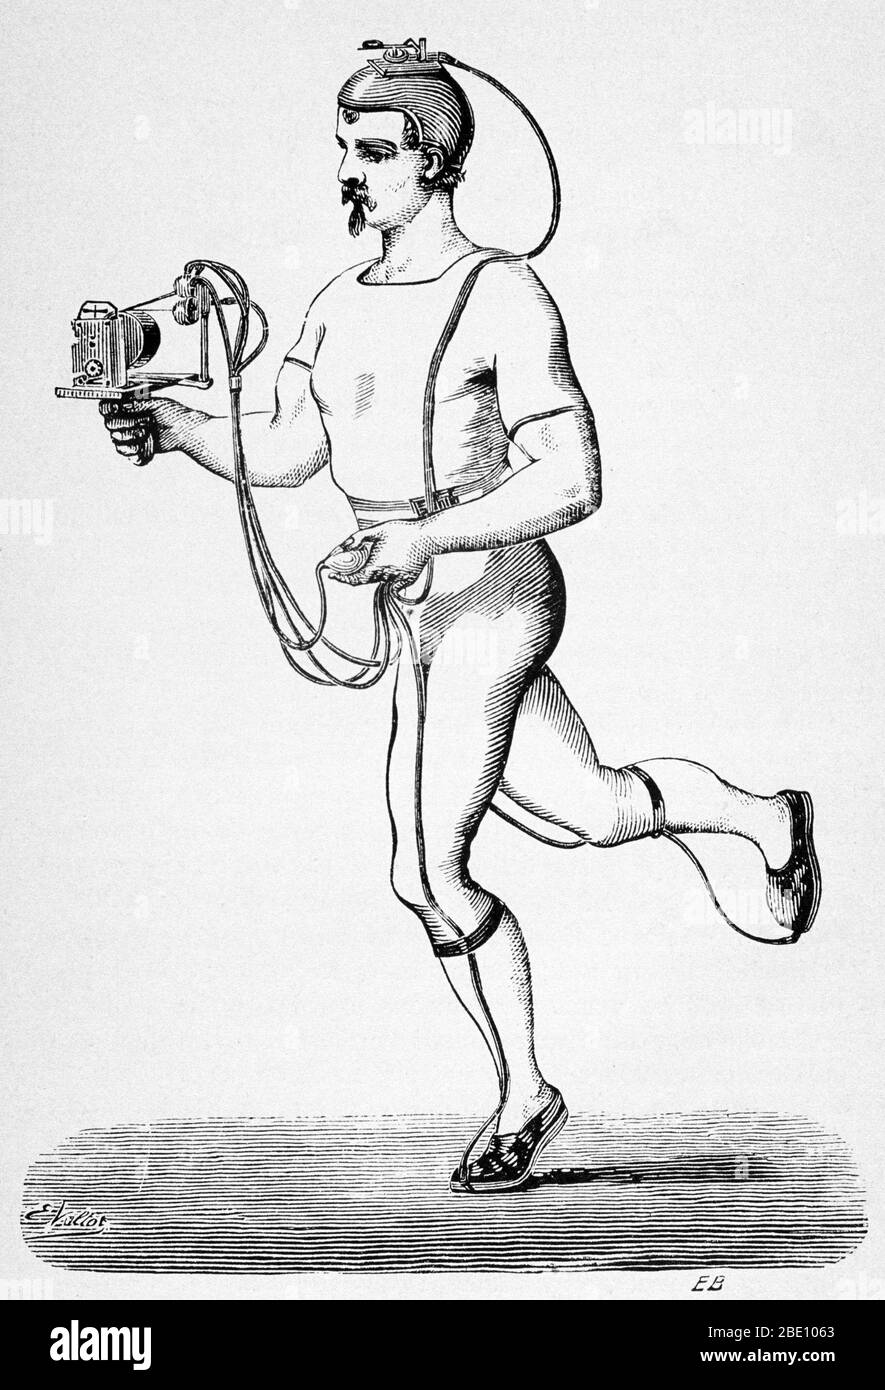 Läufer mit einem Gerät zur Registrierung seiner verschiedenen Schritte, entworfen von Etienne-Jules Marey. Veröffentlicht in Marey's 'Animal Mechanism: A Traktatise on terrestrisch and aërial locomotion' (1874). Marey (1830-1904) war ein französischer Wissenschaftler, Physiologe und Pionier der frühen Fotografie. Er wurde von Luftbewegungen fasziniert und begann Vögel zu studieren. In den 1880er Jahren übernahm und entwickelte er die animierte Fotografie zu einem eigenständigen Gebiet der Chronophotographie. Seine revolutionäre Idee war es, mehrere Phasen der Bewegung auf einer fotografischen Oberfläche festzuhalten. 1882 machte er sein Chronophotog Stockfoto